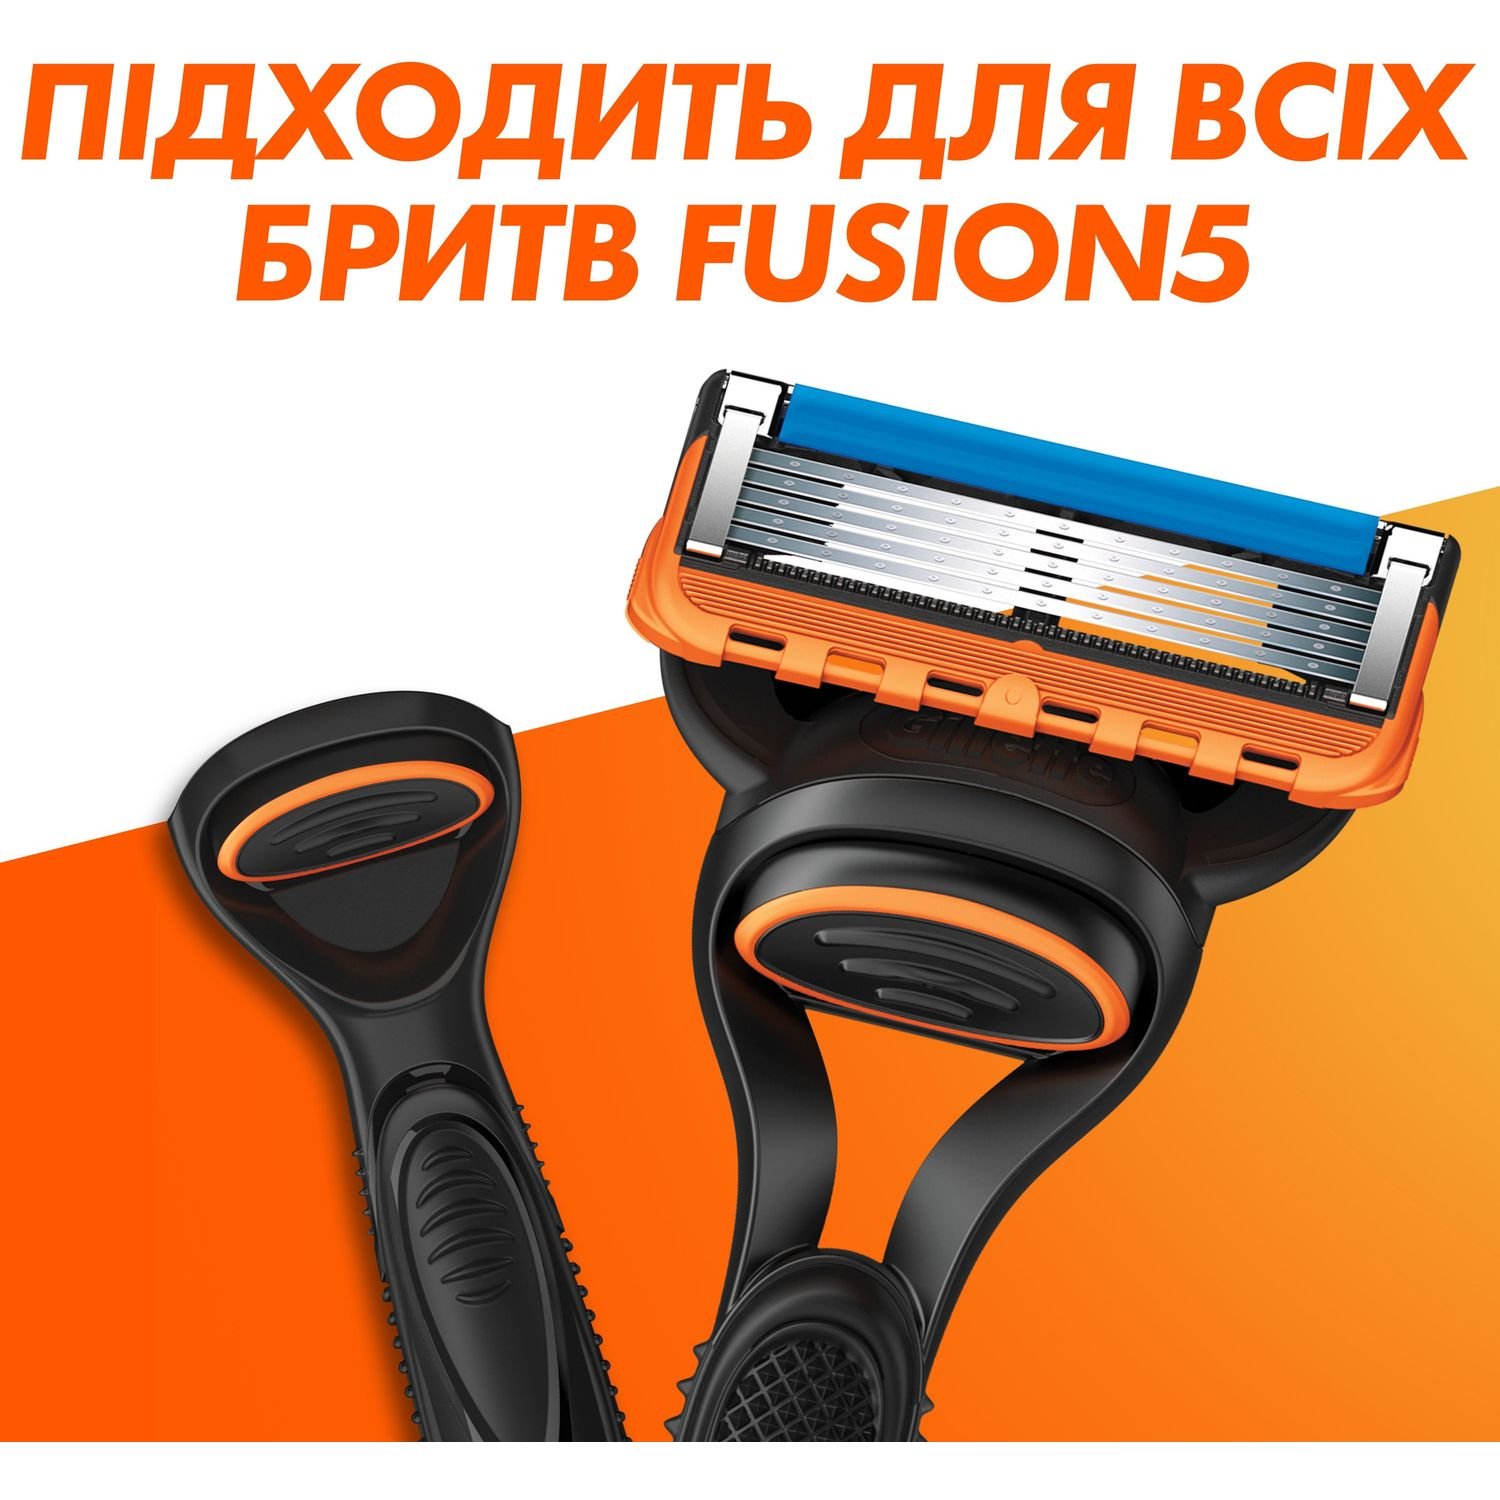 Сменные картриджи для бритья мужские Gillette Fusion5 2 шт. - фото 4